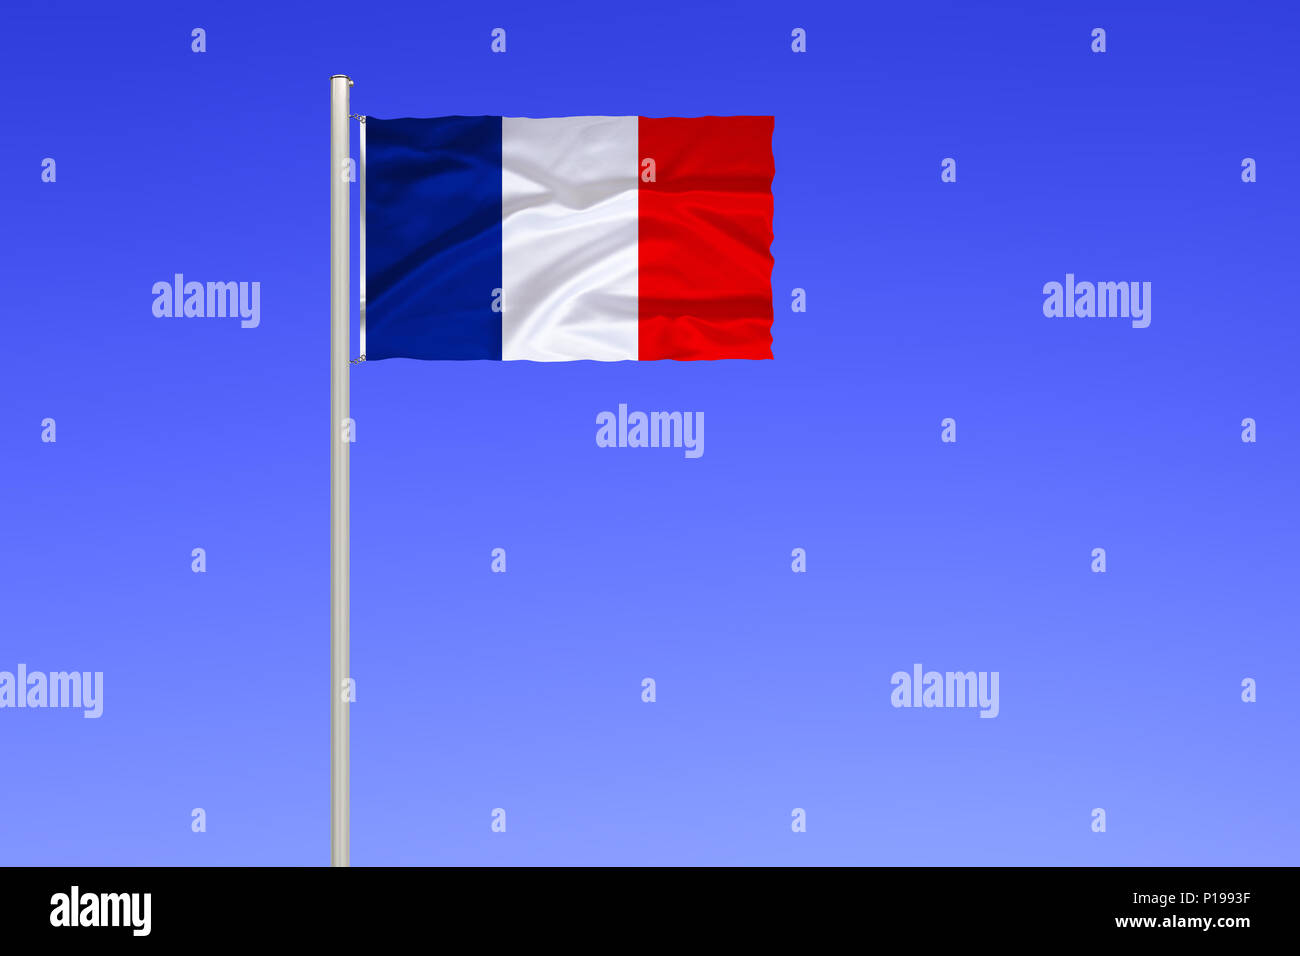 Flagge Frankreich Flagge von Frankreich Stockfotografie - Alamy